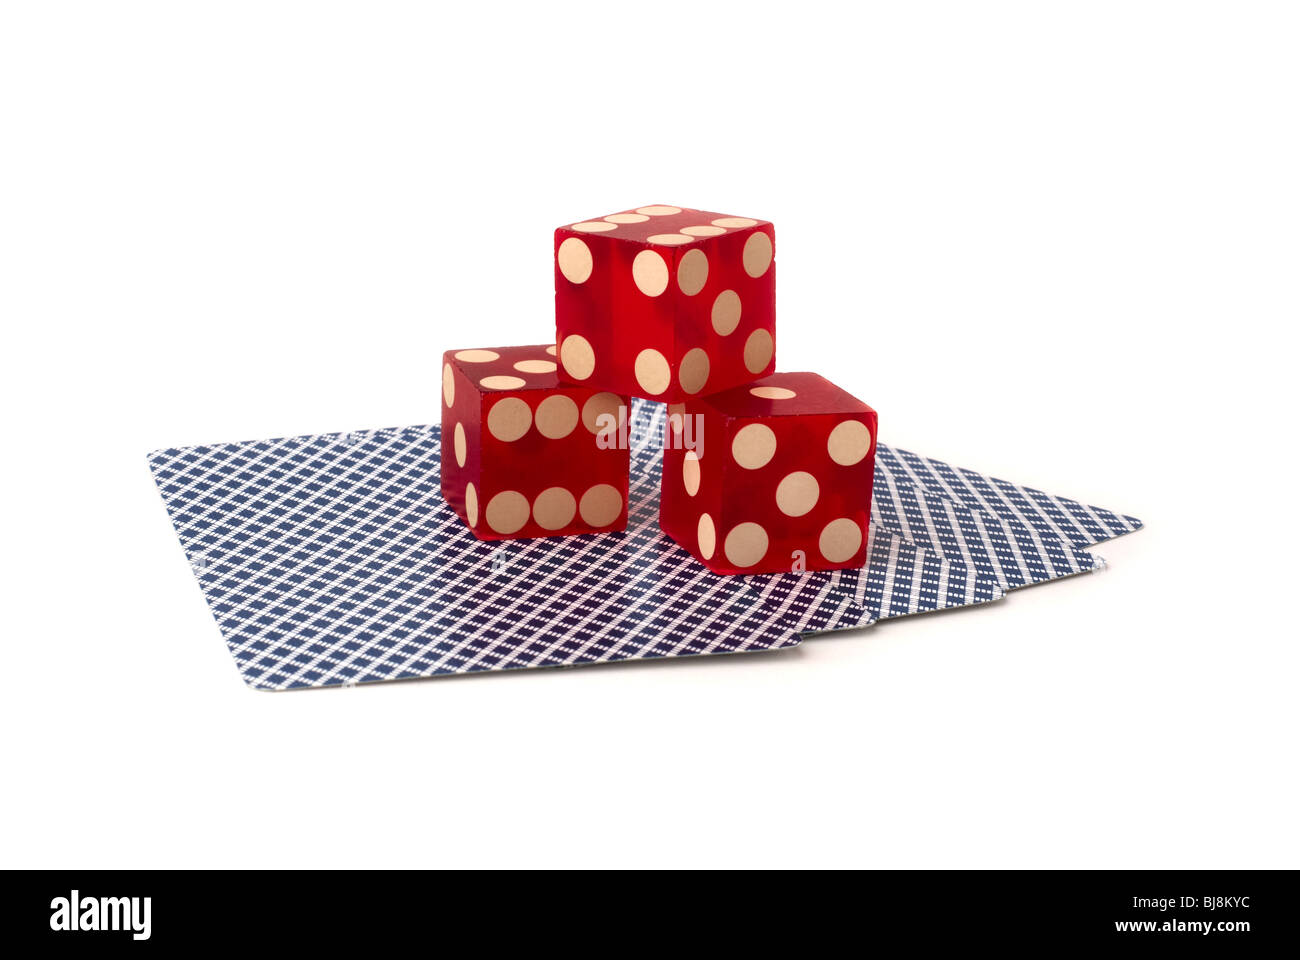 drei rote Würfel auf fünf kopfüber Spielkarten mit blauem Muster, gedreht im Studio auf weißem Hintergrund Stockfoto